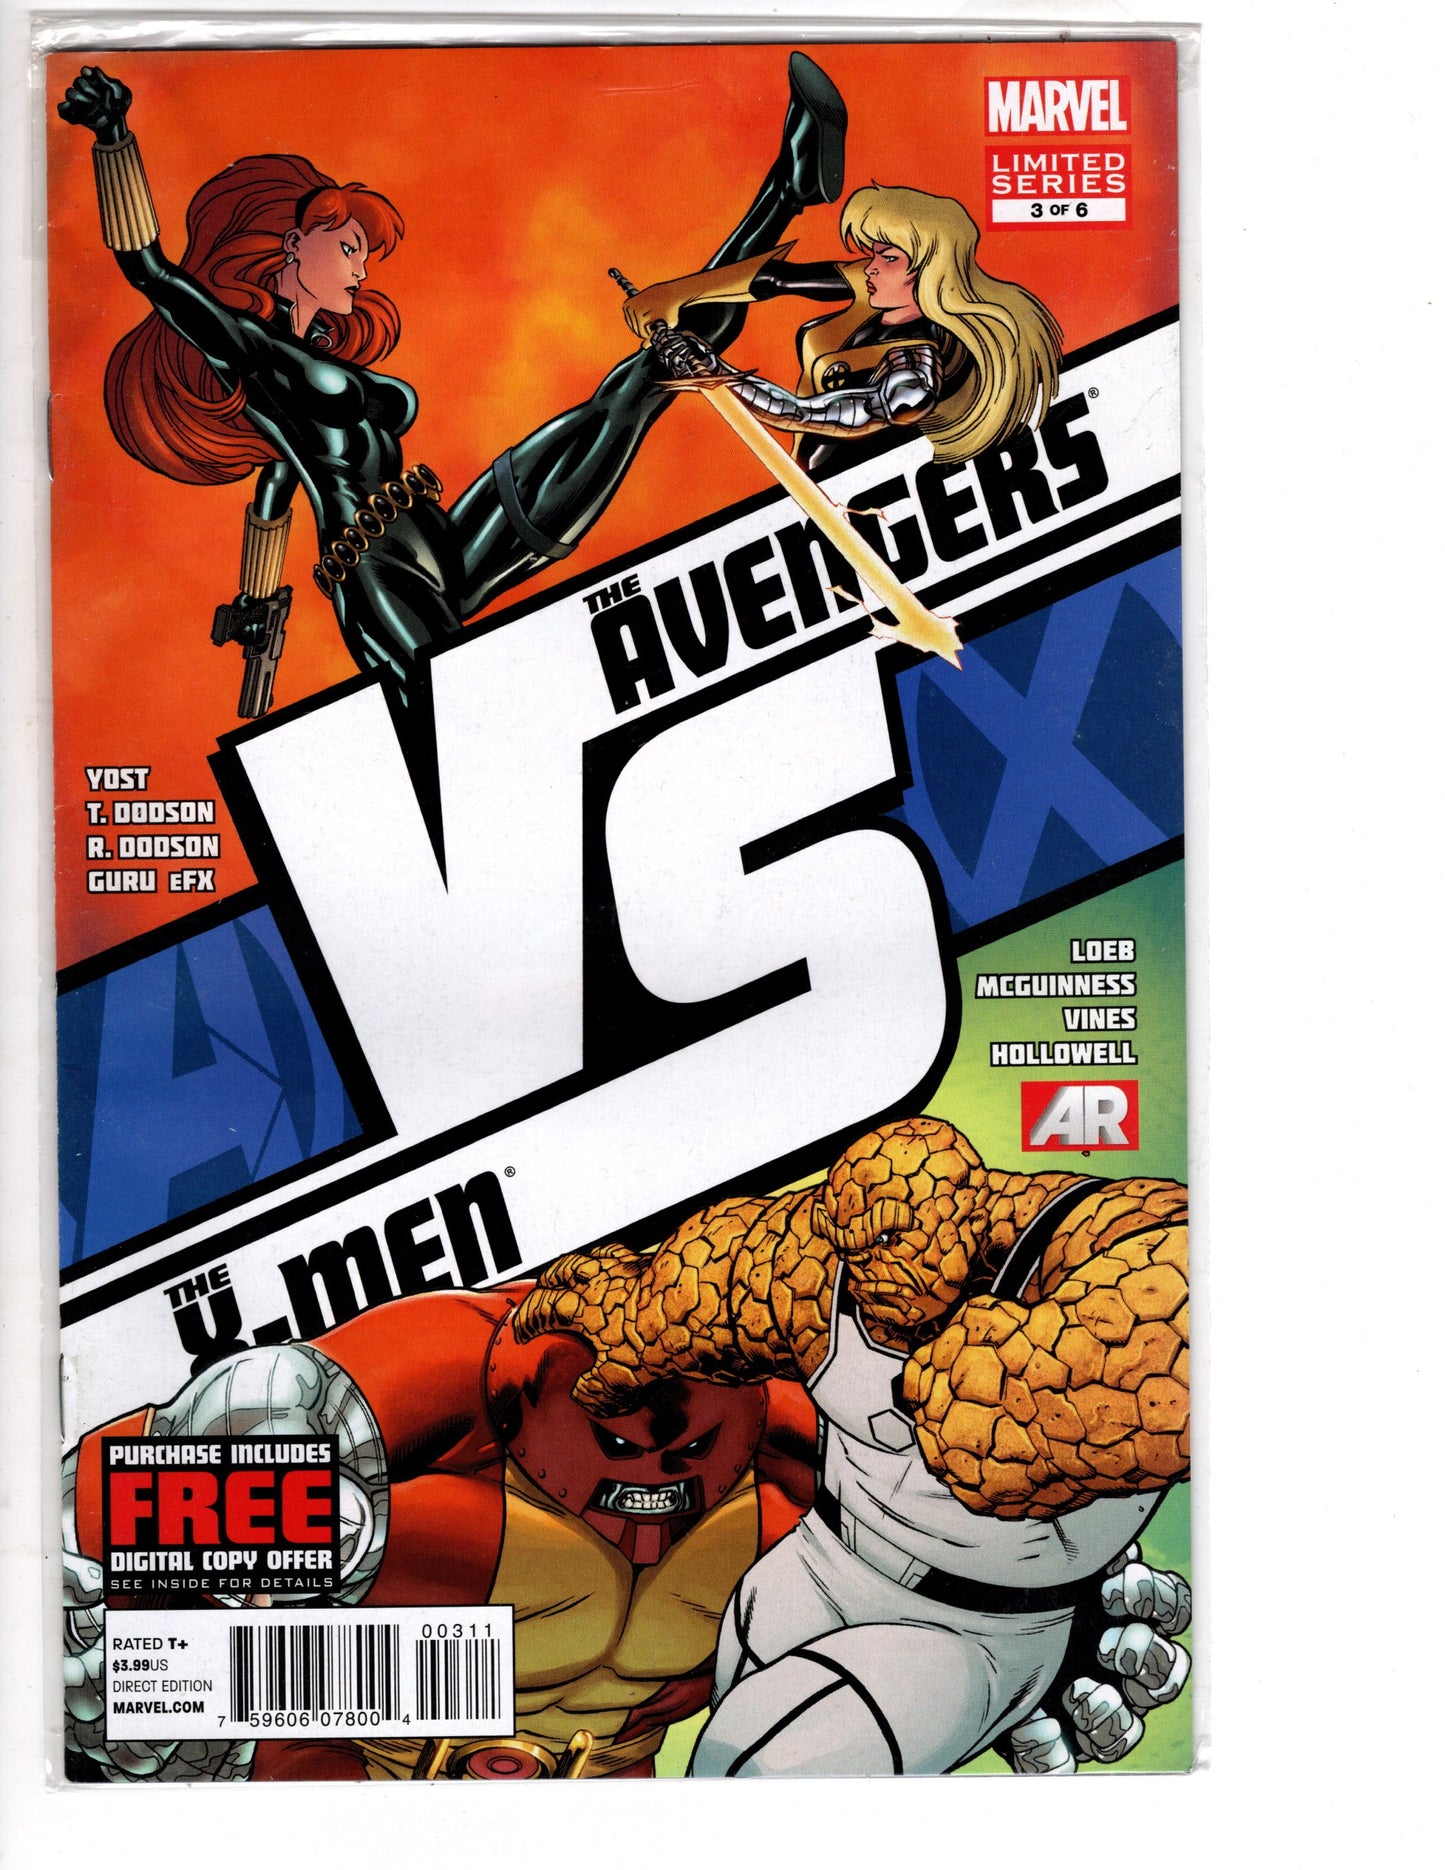 Avengers Vs X-men #3